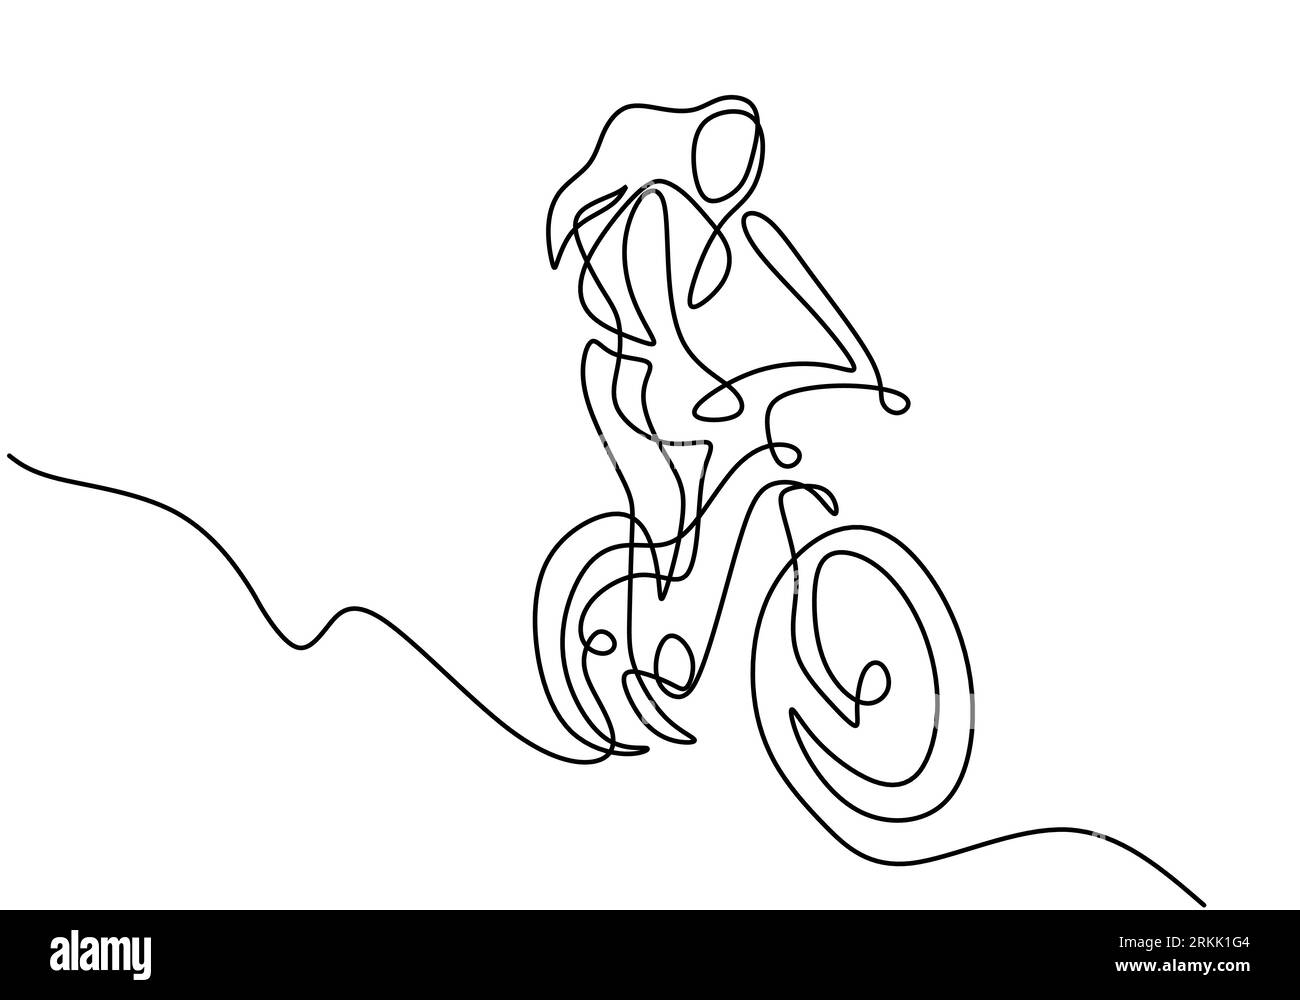 Eine durchgehende Linienzeichnung einer jungen sportlichen Frau, die Fahrrad fährt und einen Trick auf dem Fahrrad macht. Ein Mädchen mit langen Haaren, das in der Fahrradhand steht Stock Vektor